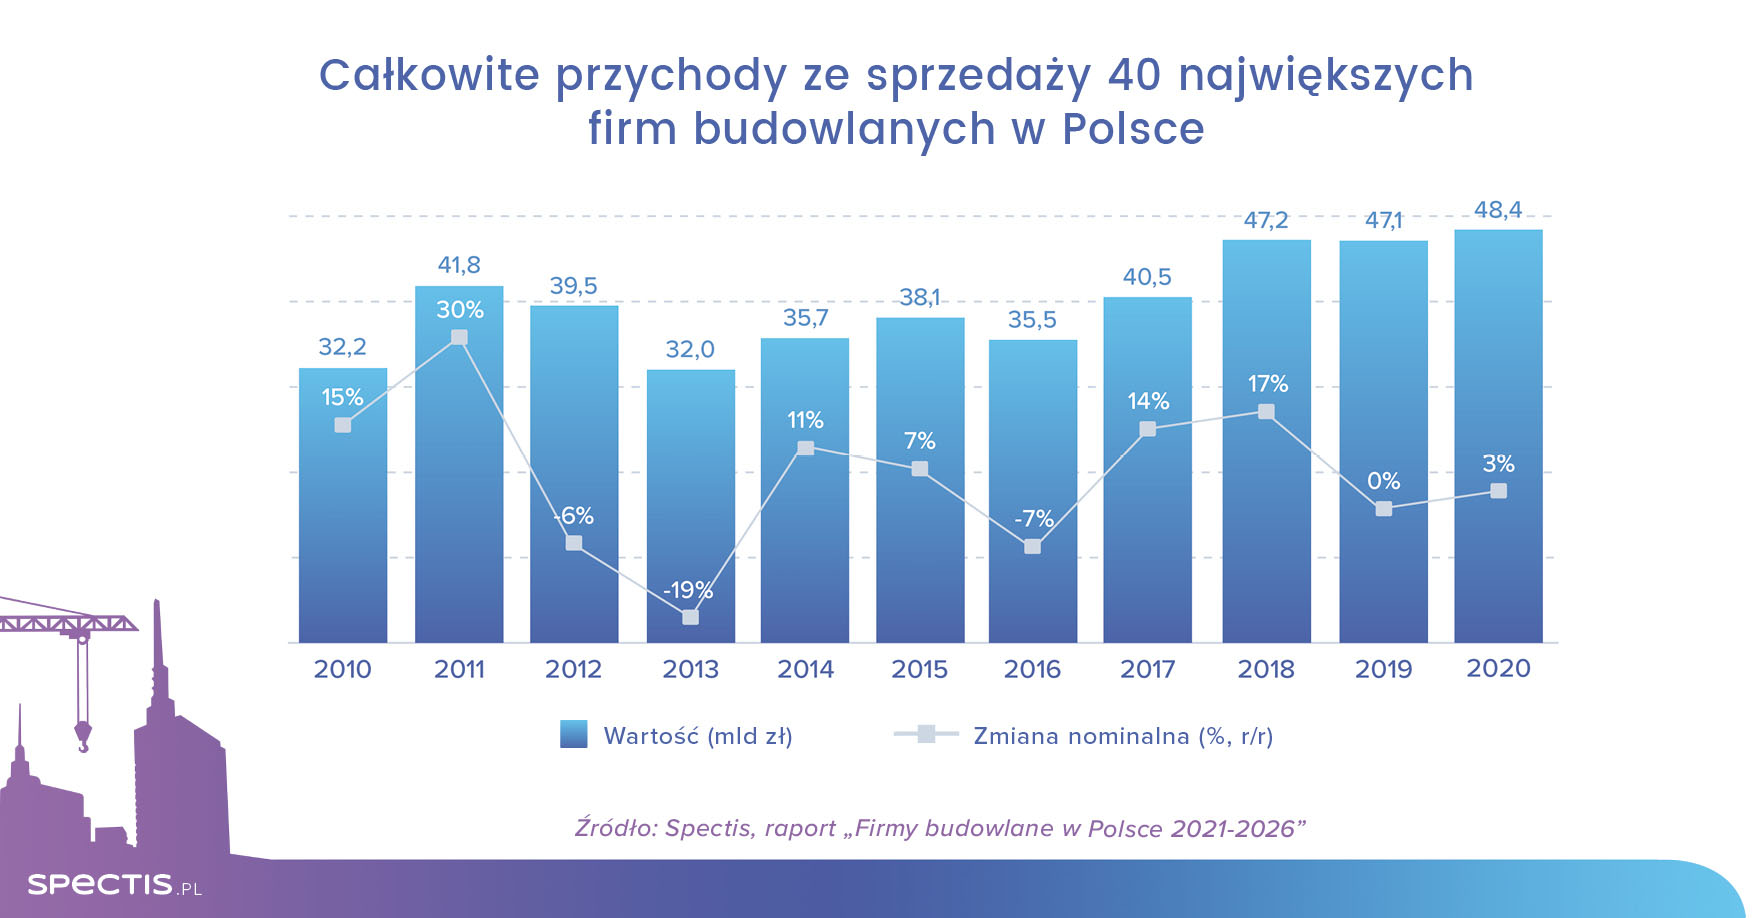 48 mld zł przychodów 40 największych firm budowlanych w Polsce